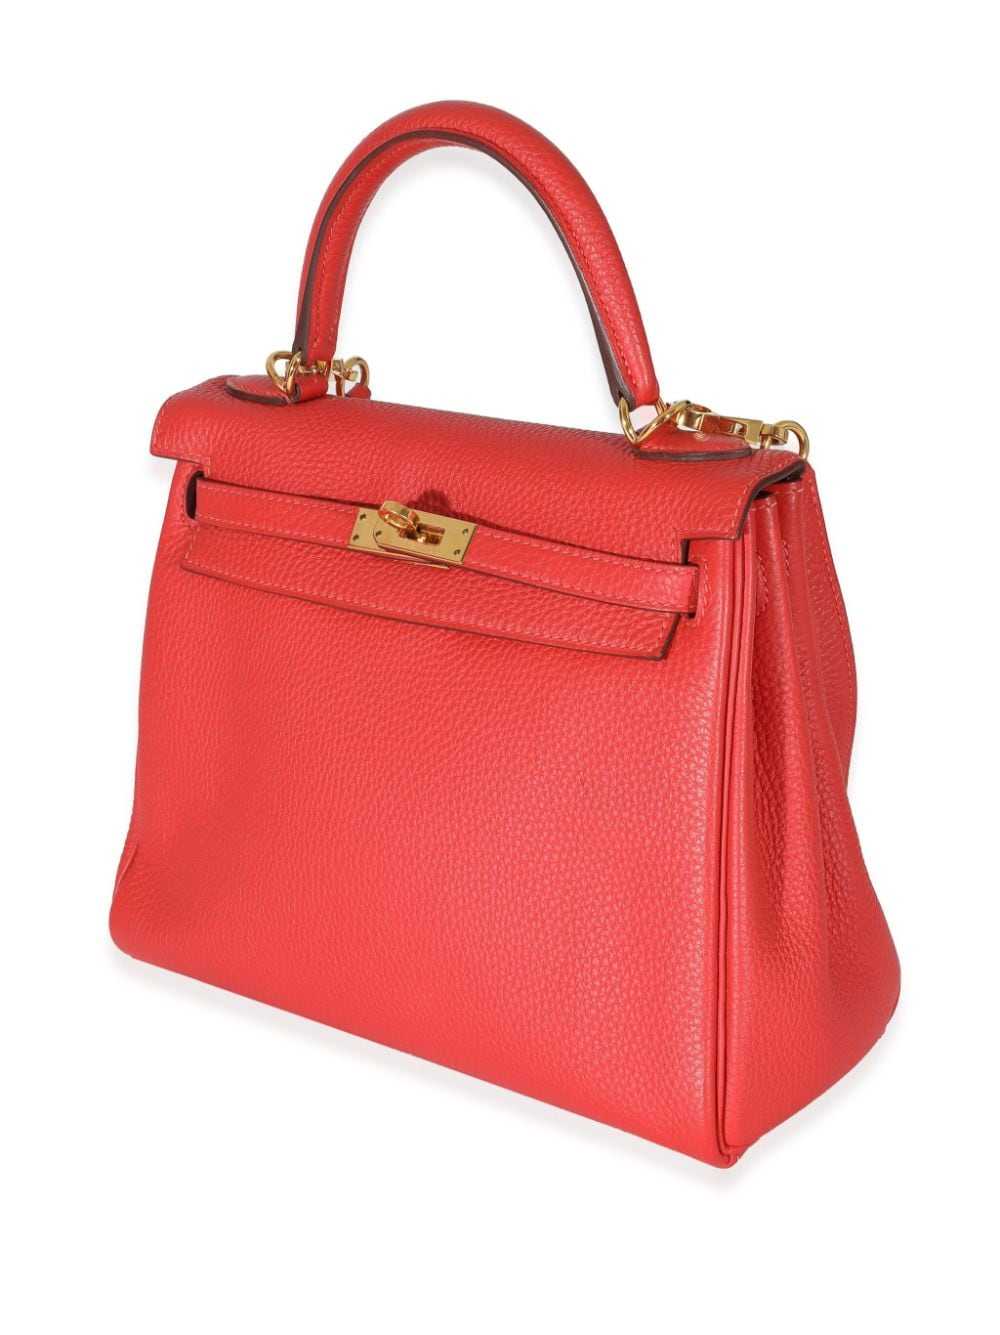 Hermès Pre-Owned 2014 Kelly 25 handbag - Red - image 2